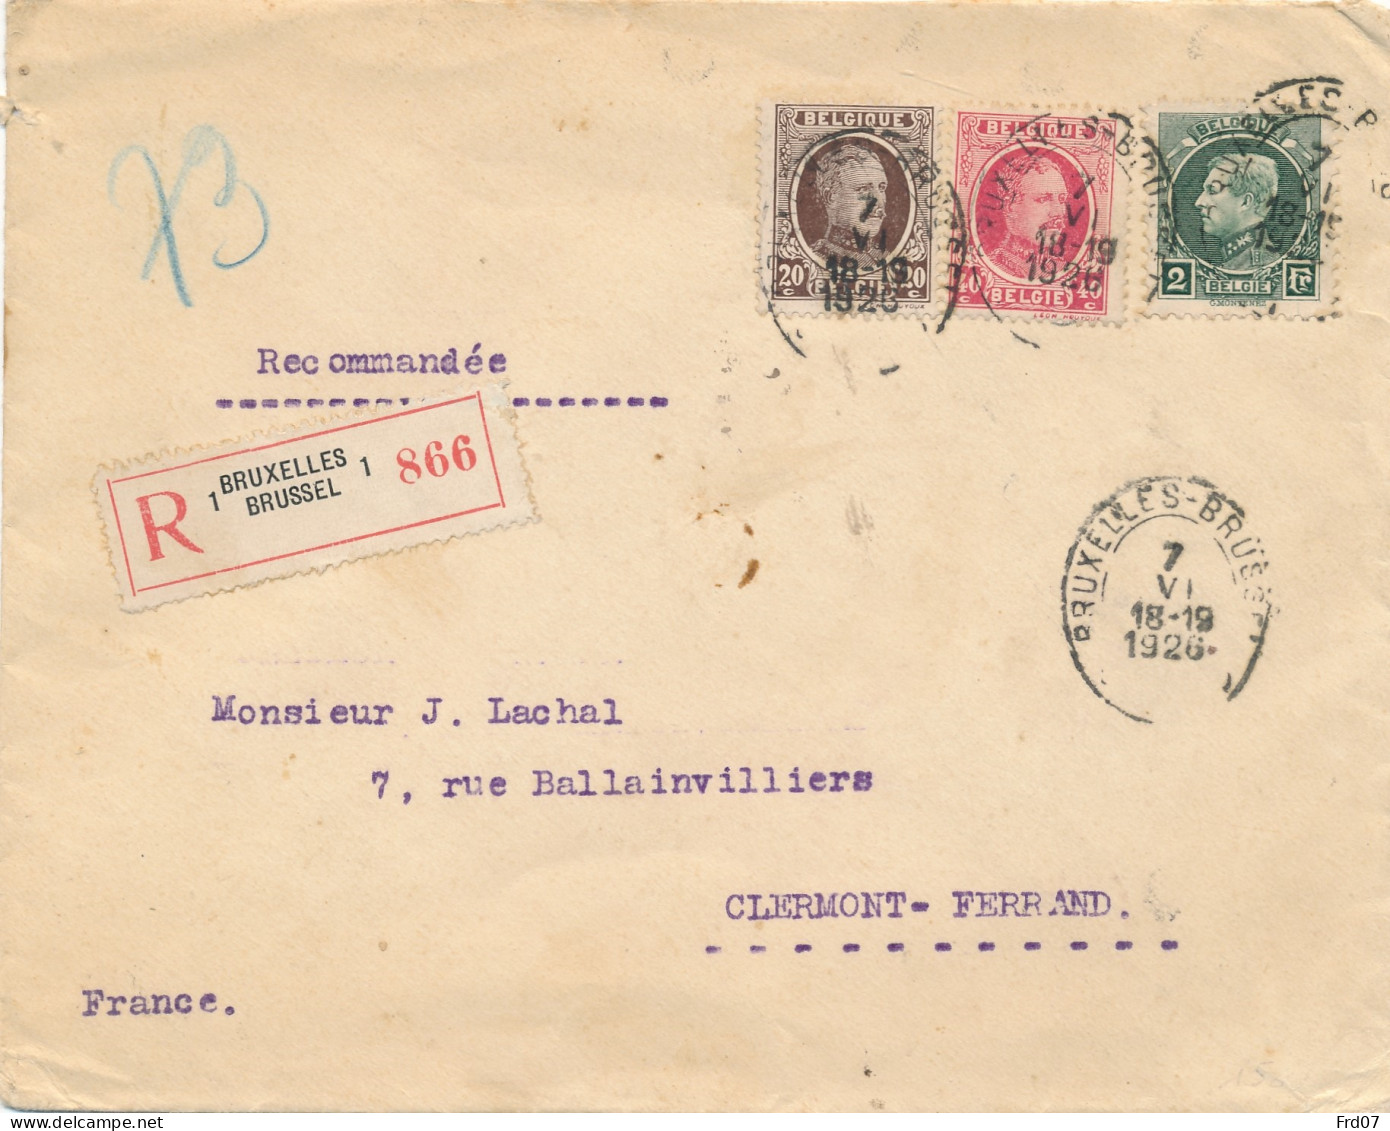 Tricolore 216, 202, 196 Sur Recommandé Bruxelles 7 VI 1926 Vers Clermont-Ferrand 8-8 26 - 1921-1925 Kleine Montenez